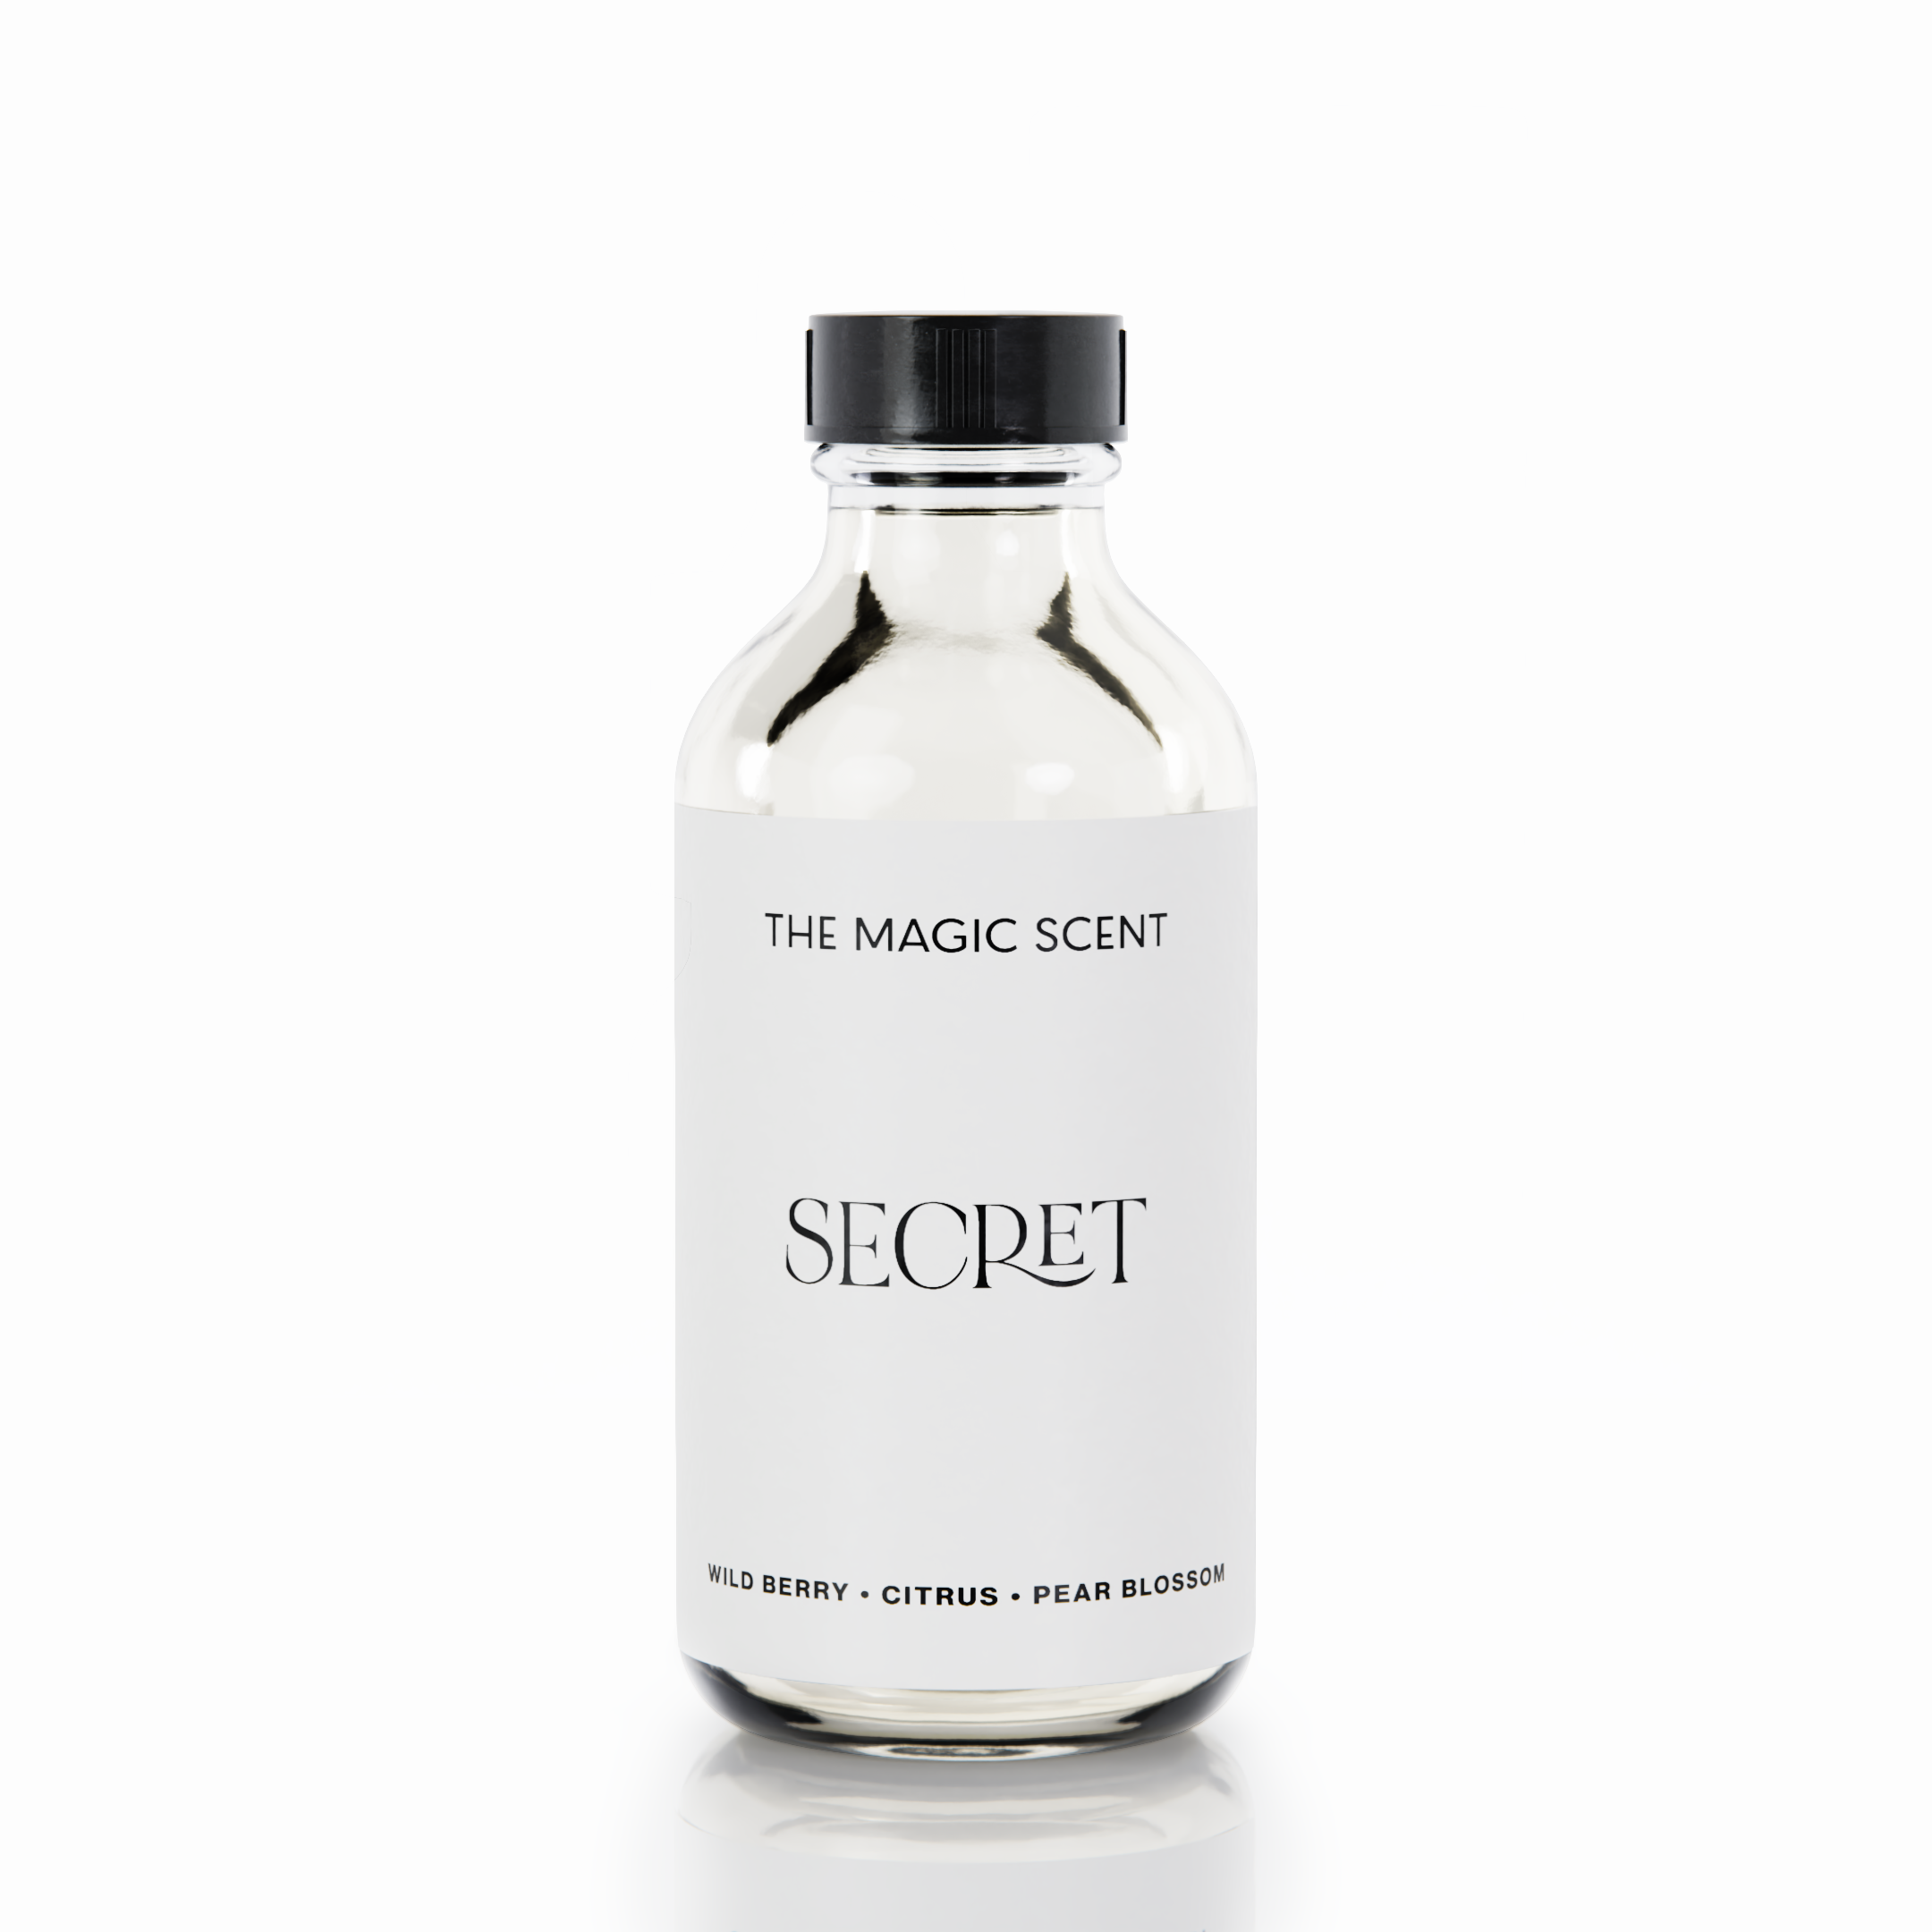 The Magic Scent